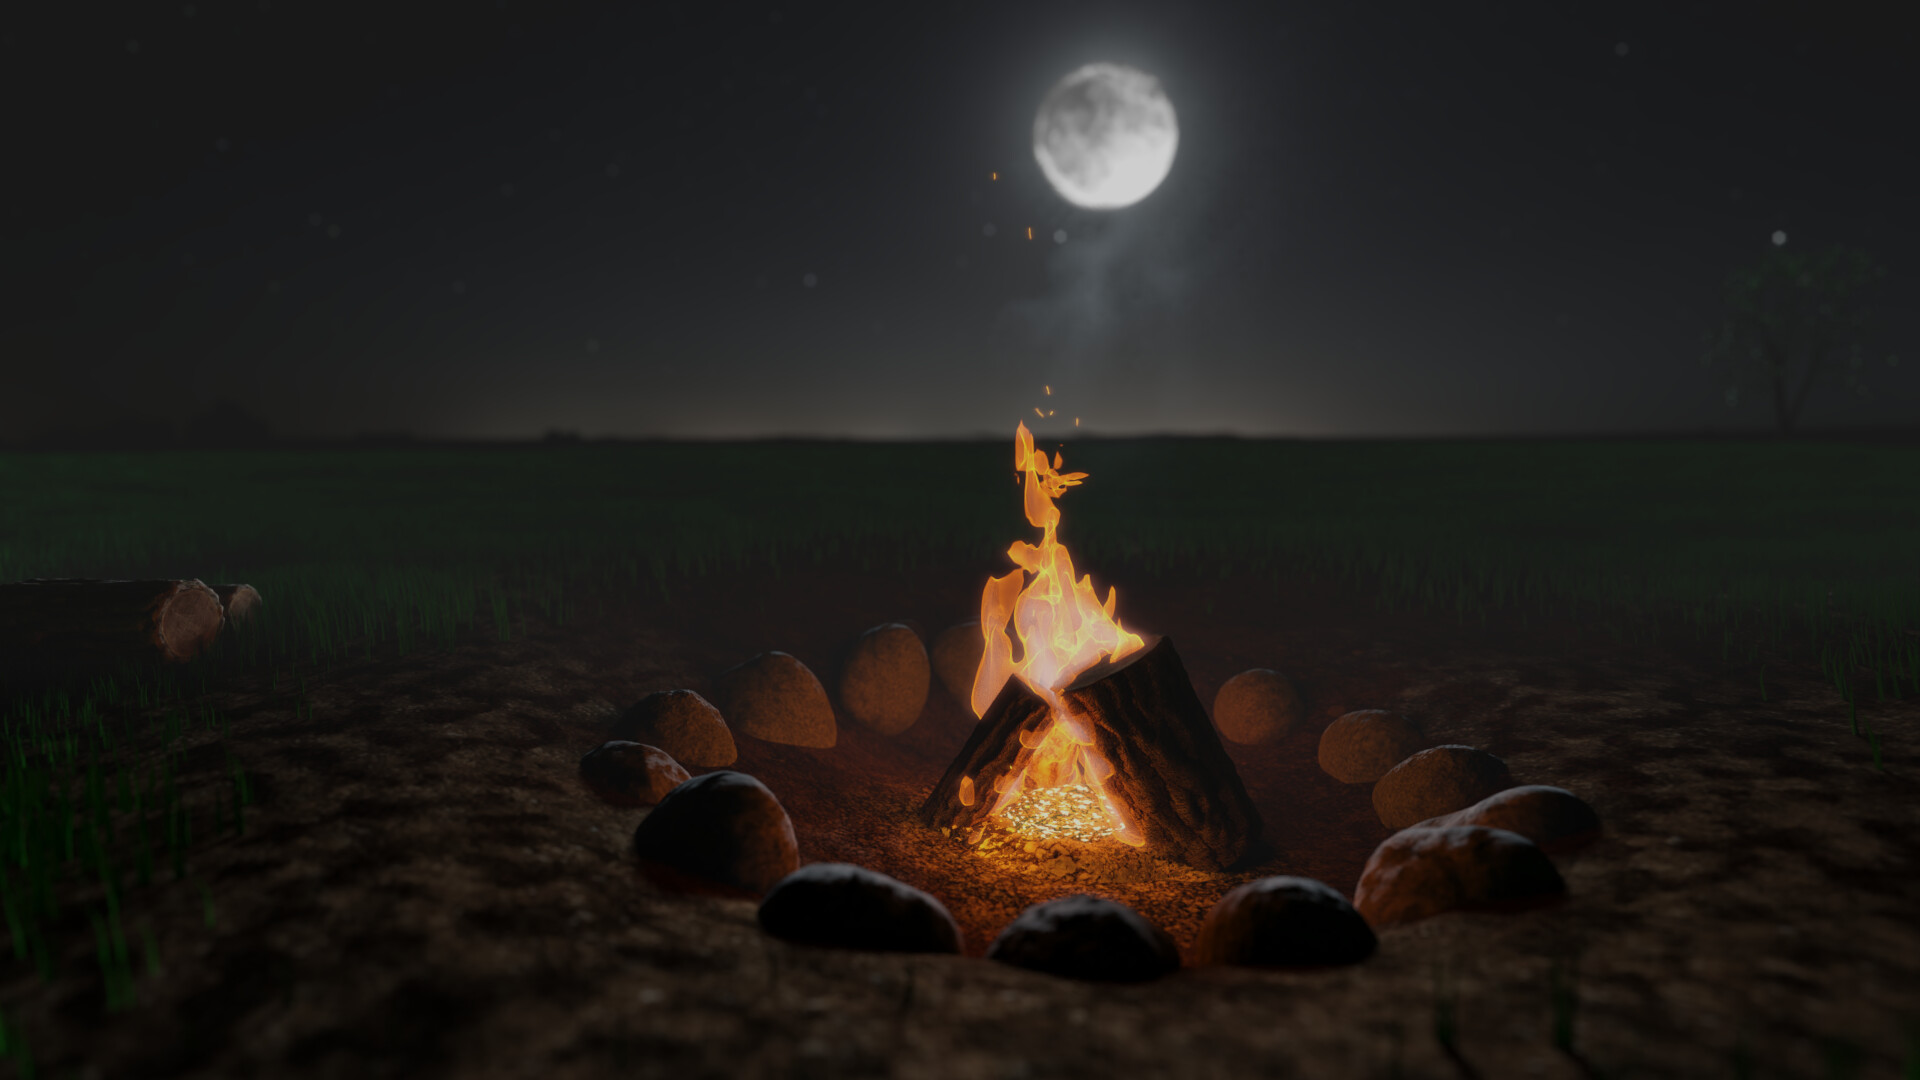 A Campfire I Made in Blender - Works in Progress - Blender Artists Community